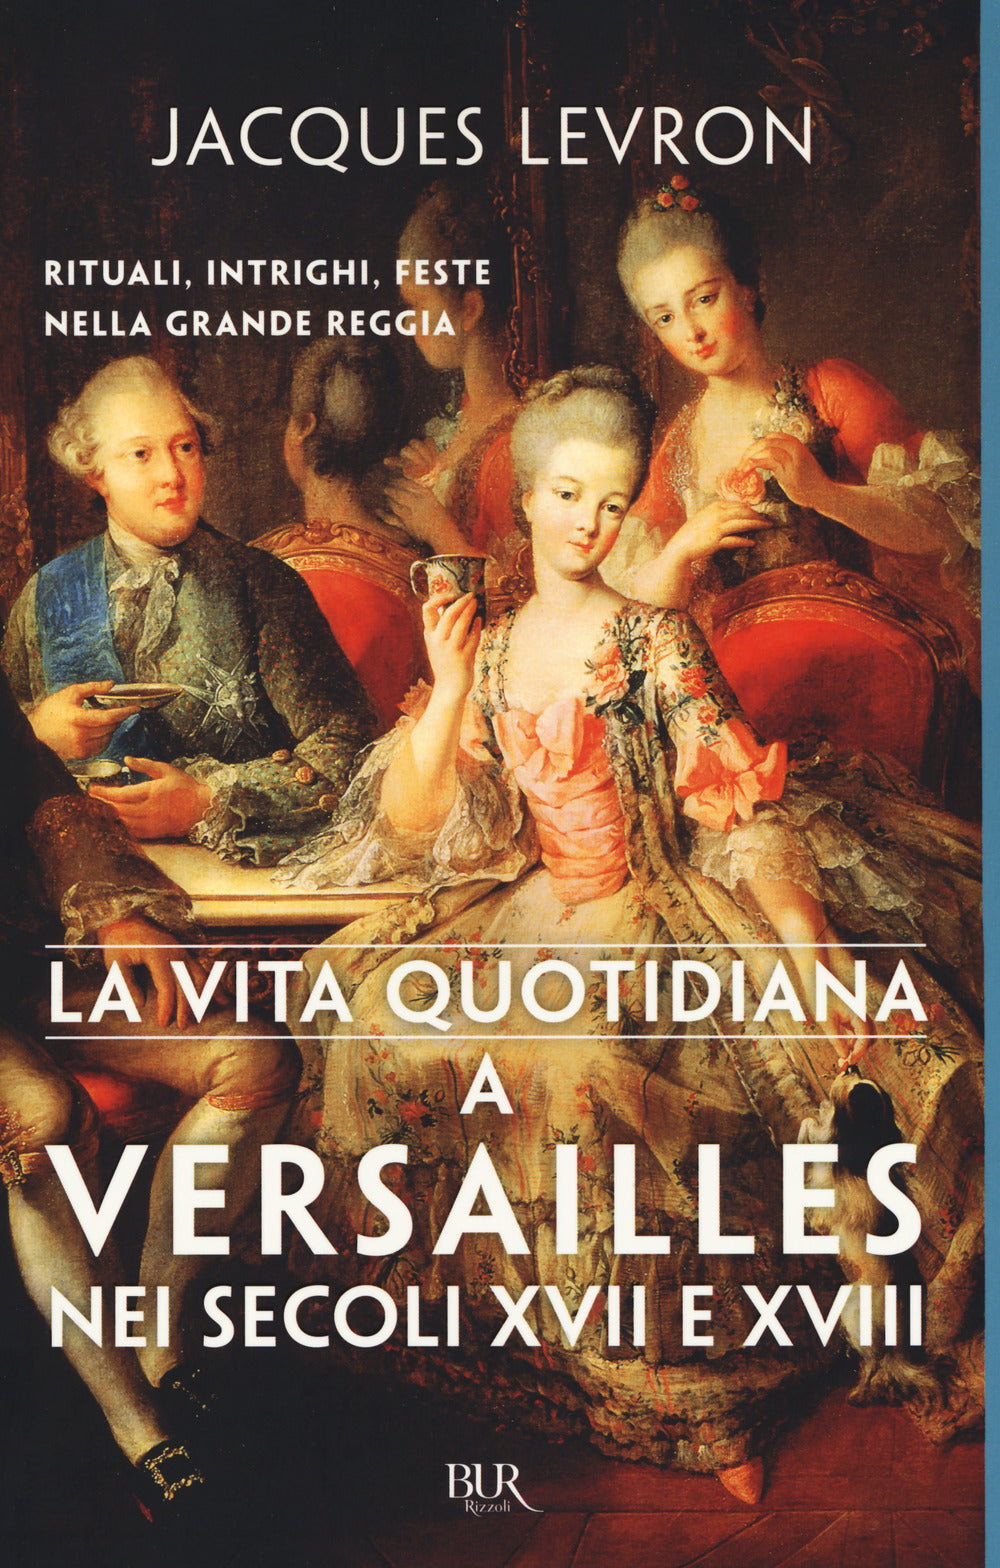 La vita quotidiana a Versailles nei secoli XVII e XVIII.